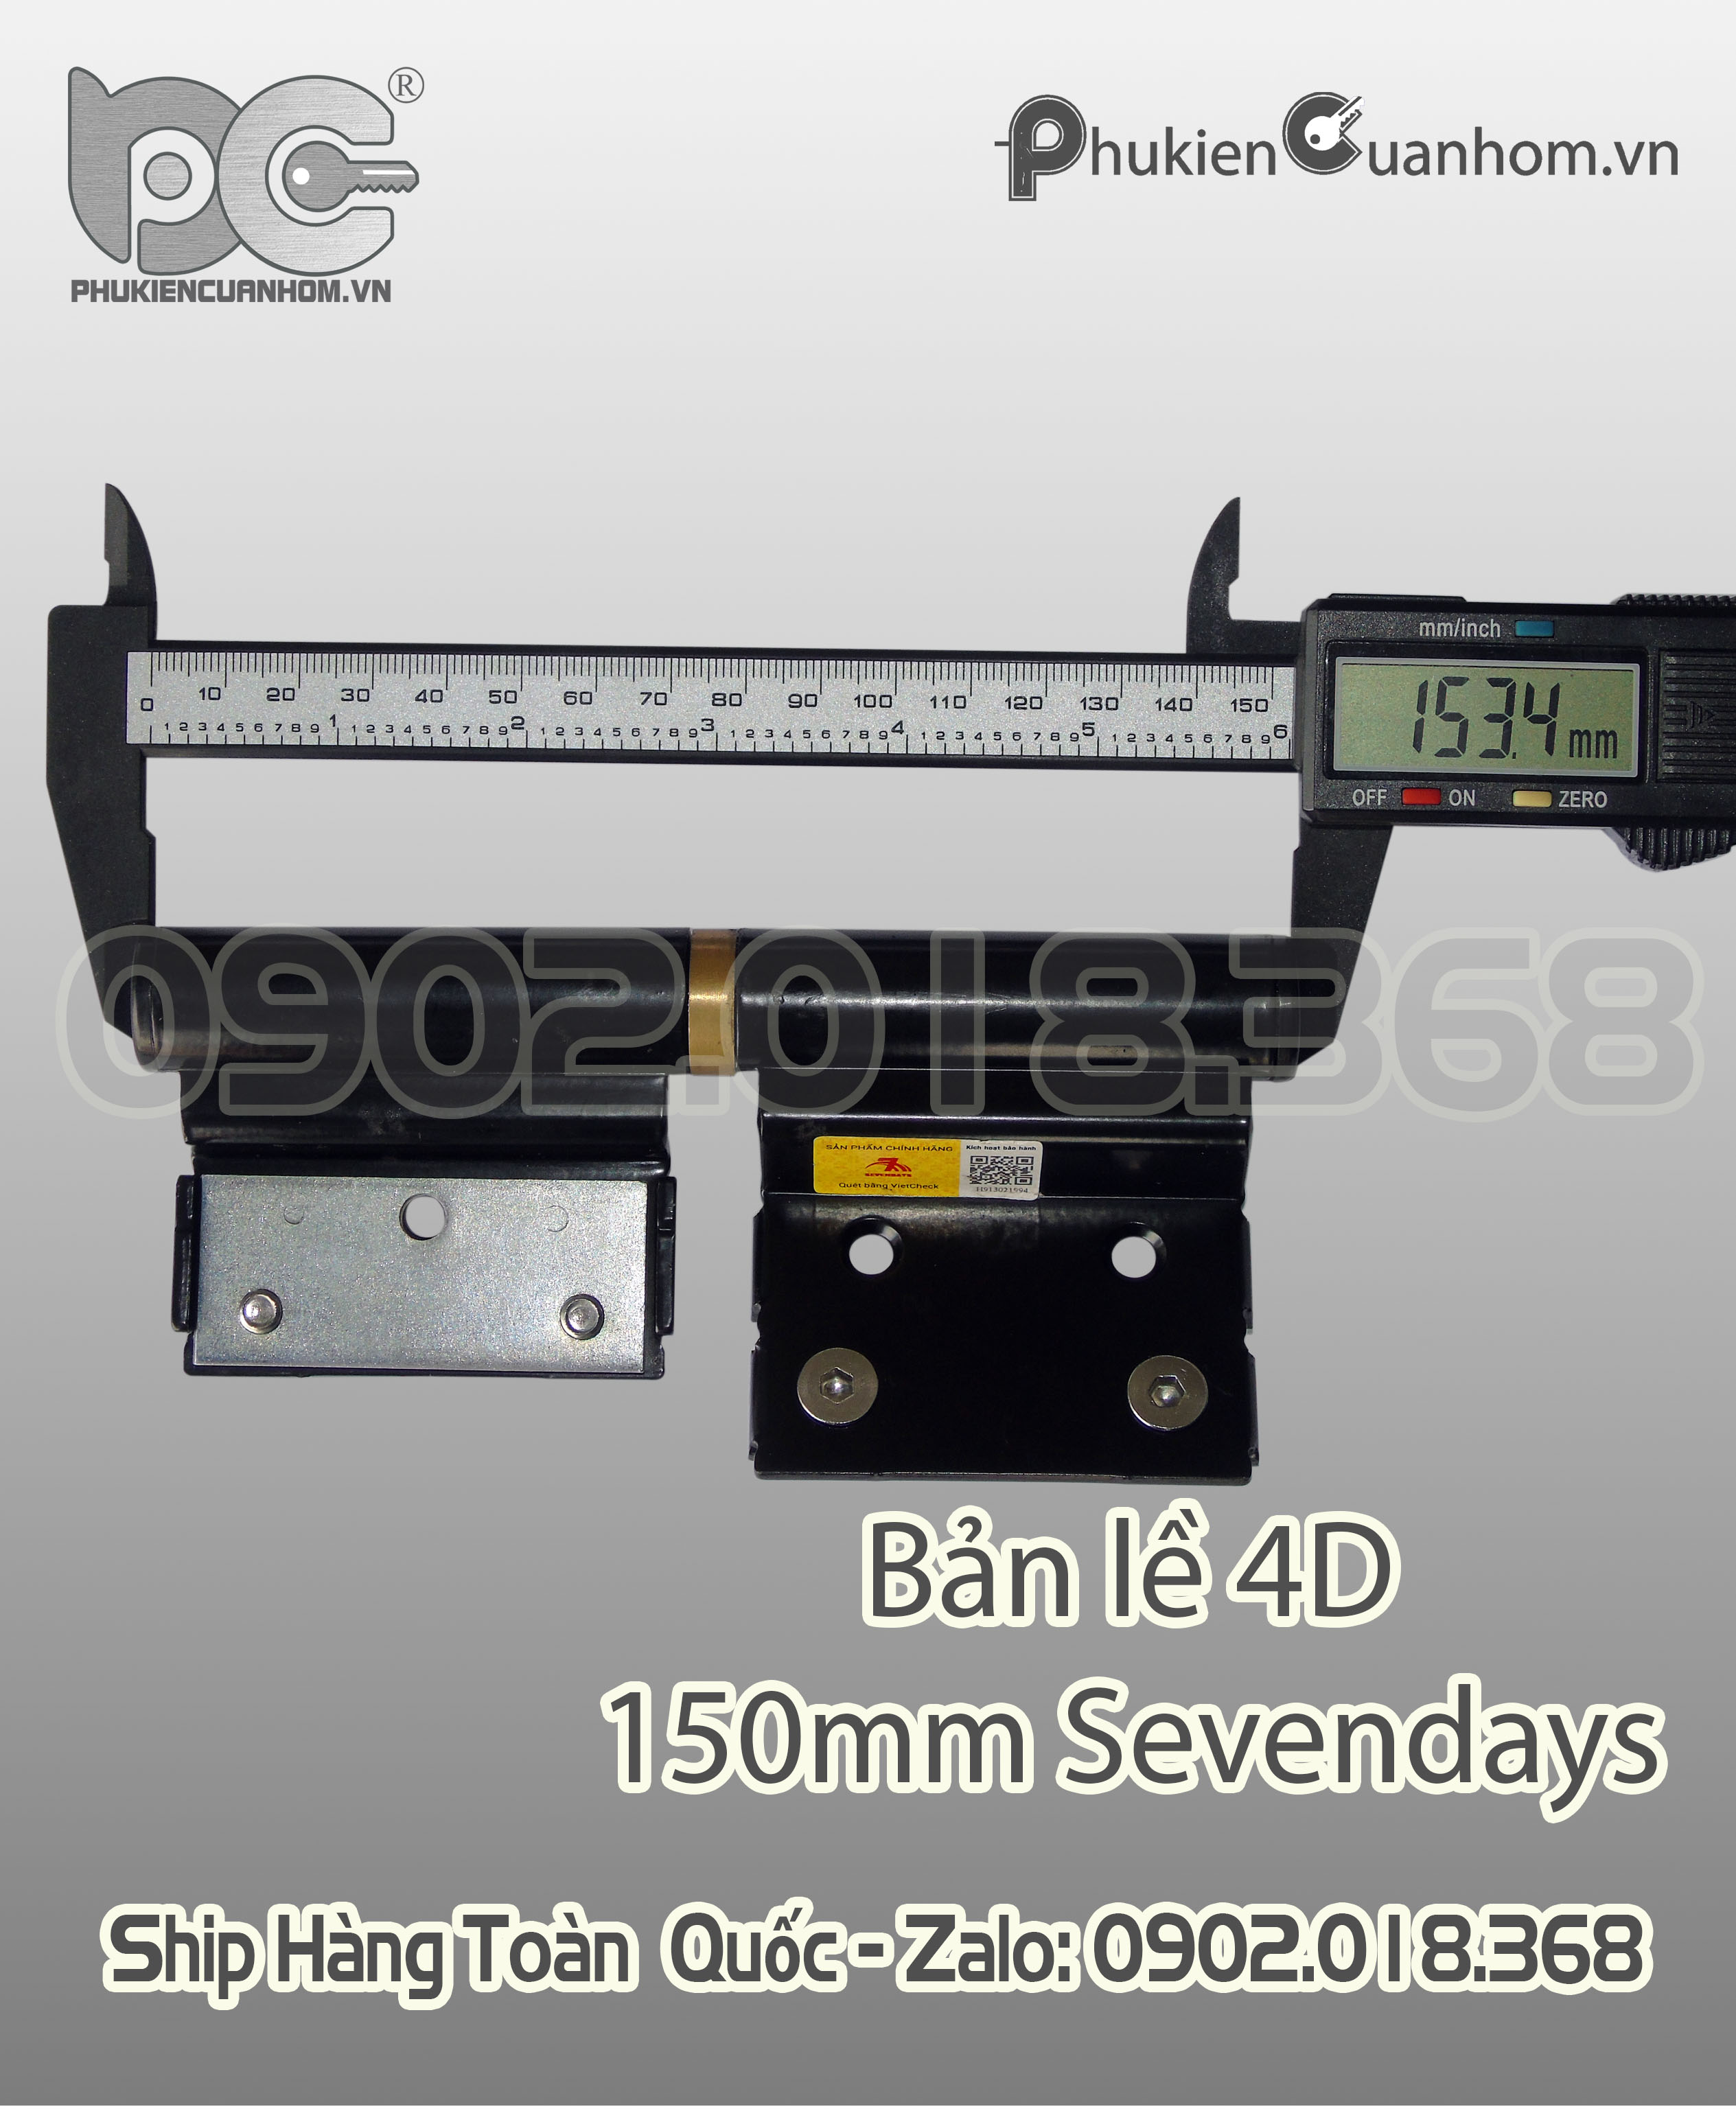 Bản lề 4D dài 150mm hiệu Sevendays dùng cho nhôm Xingfa 55